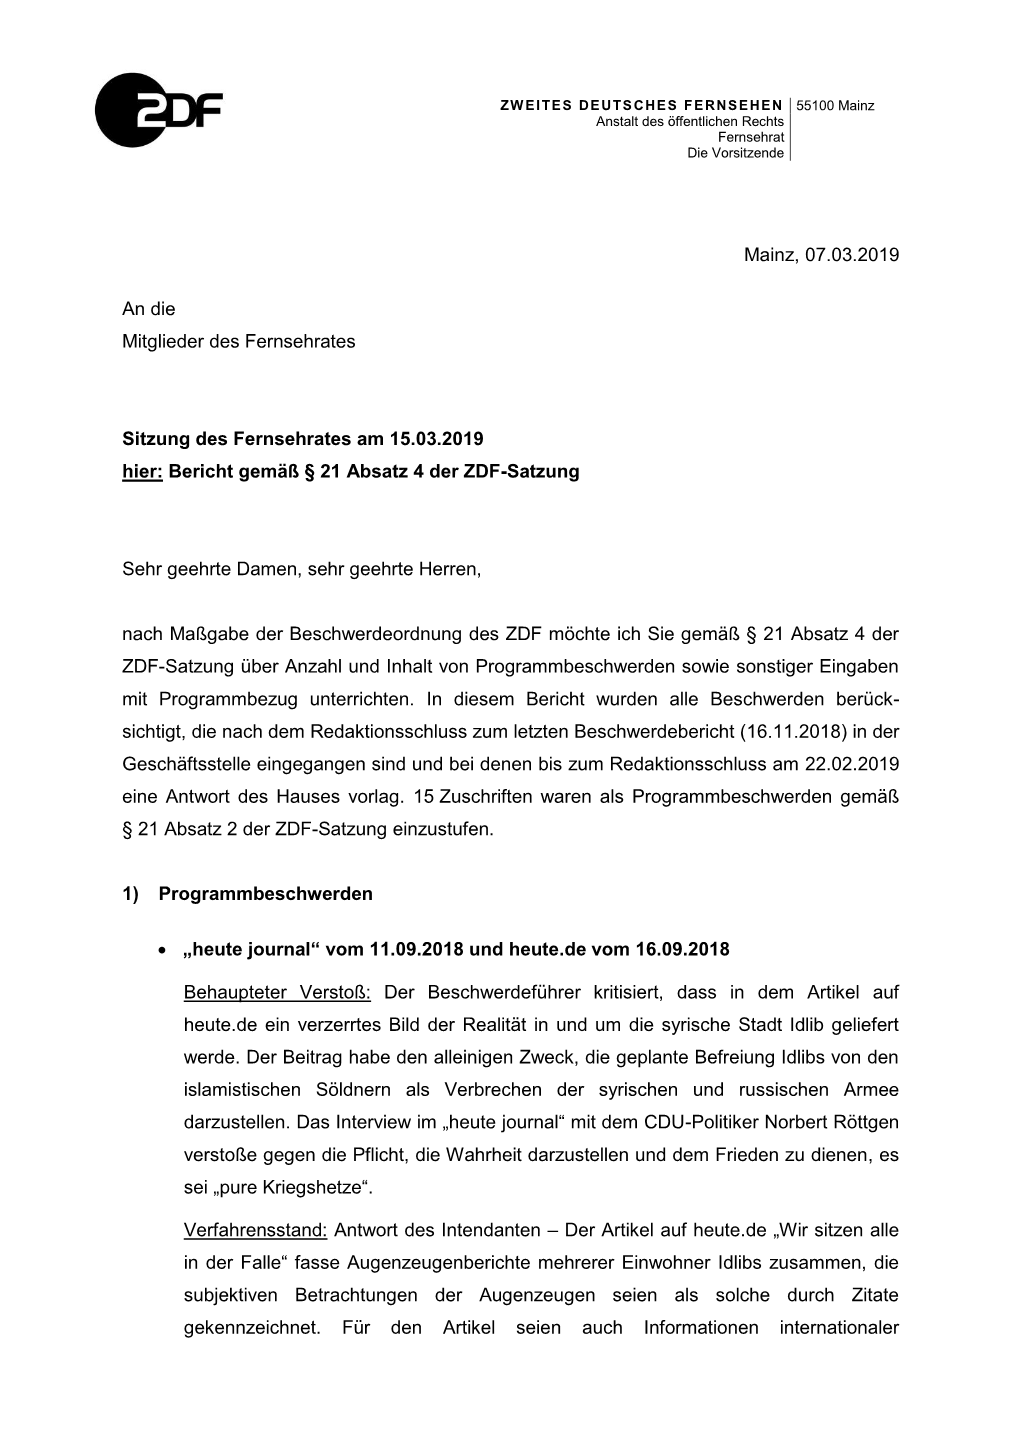 Bericht Gemäß § 21 Absatz 4 Der ZDF-Satzung